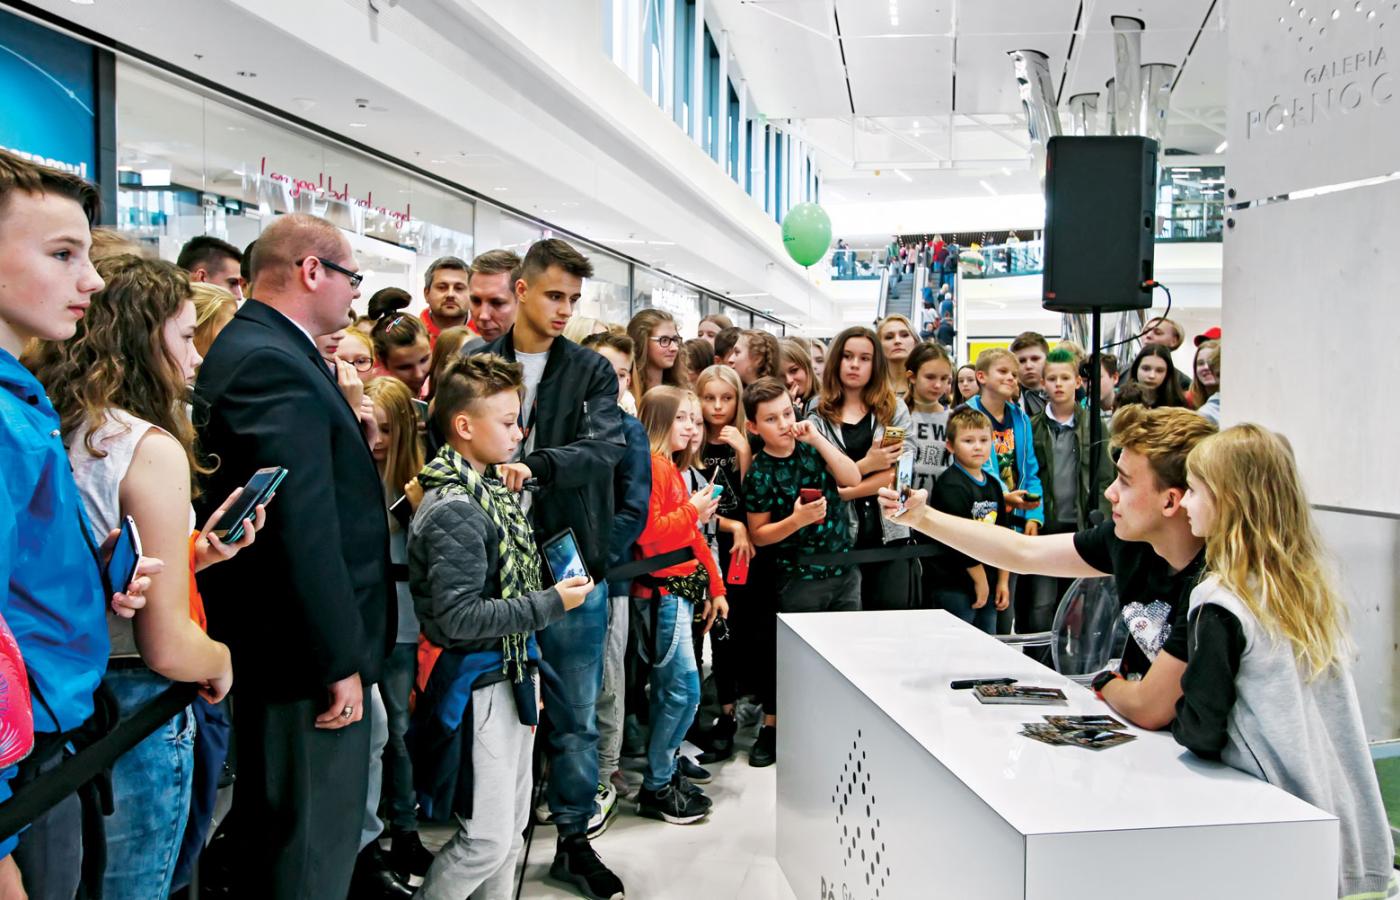 Otwarcie Galerii Północnej w Warszawie uświetniali swoja obecnością youtuberzy, ściągając setki młodocianych fanów. Na fot. Blowek w trakcie sesji selfie.